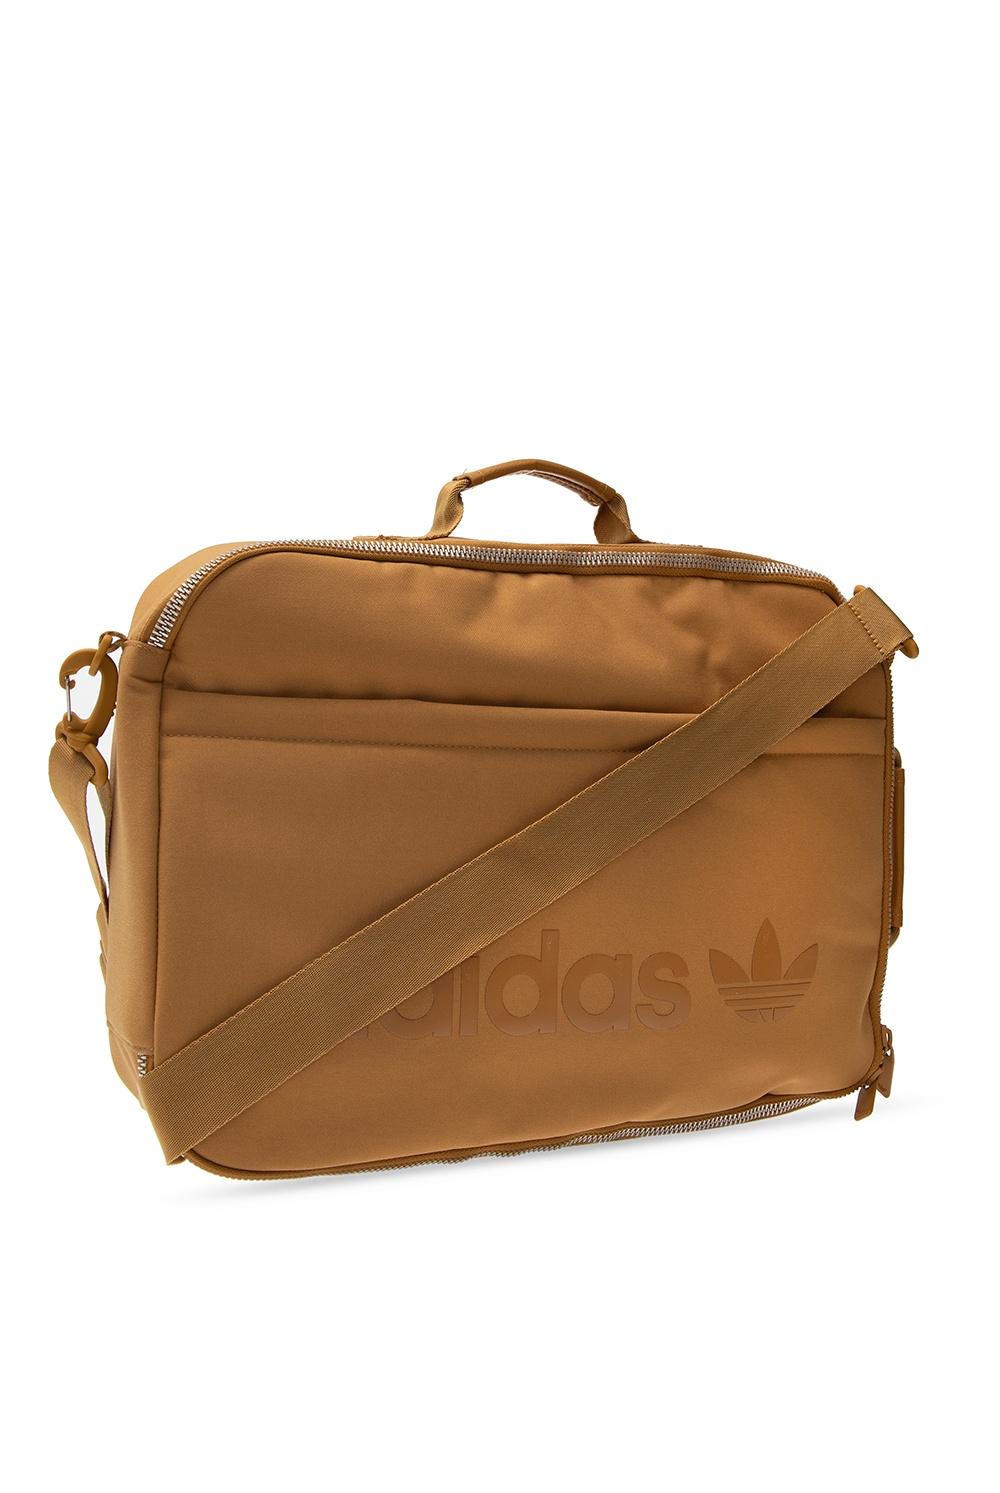 adidas Originals Branded Shoulder Bag 